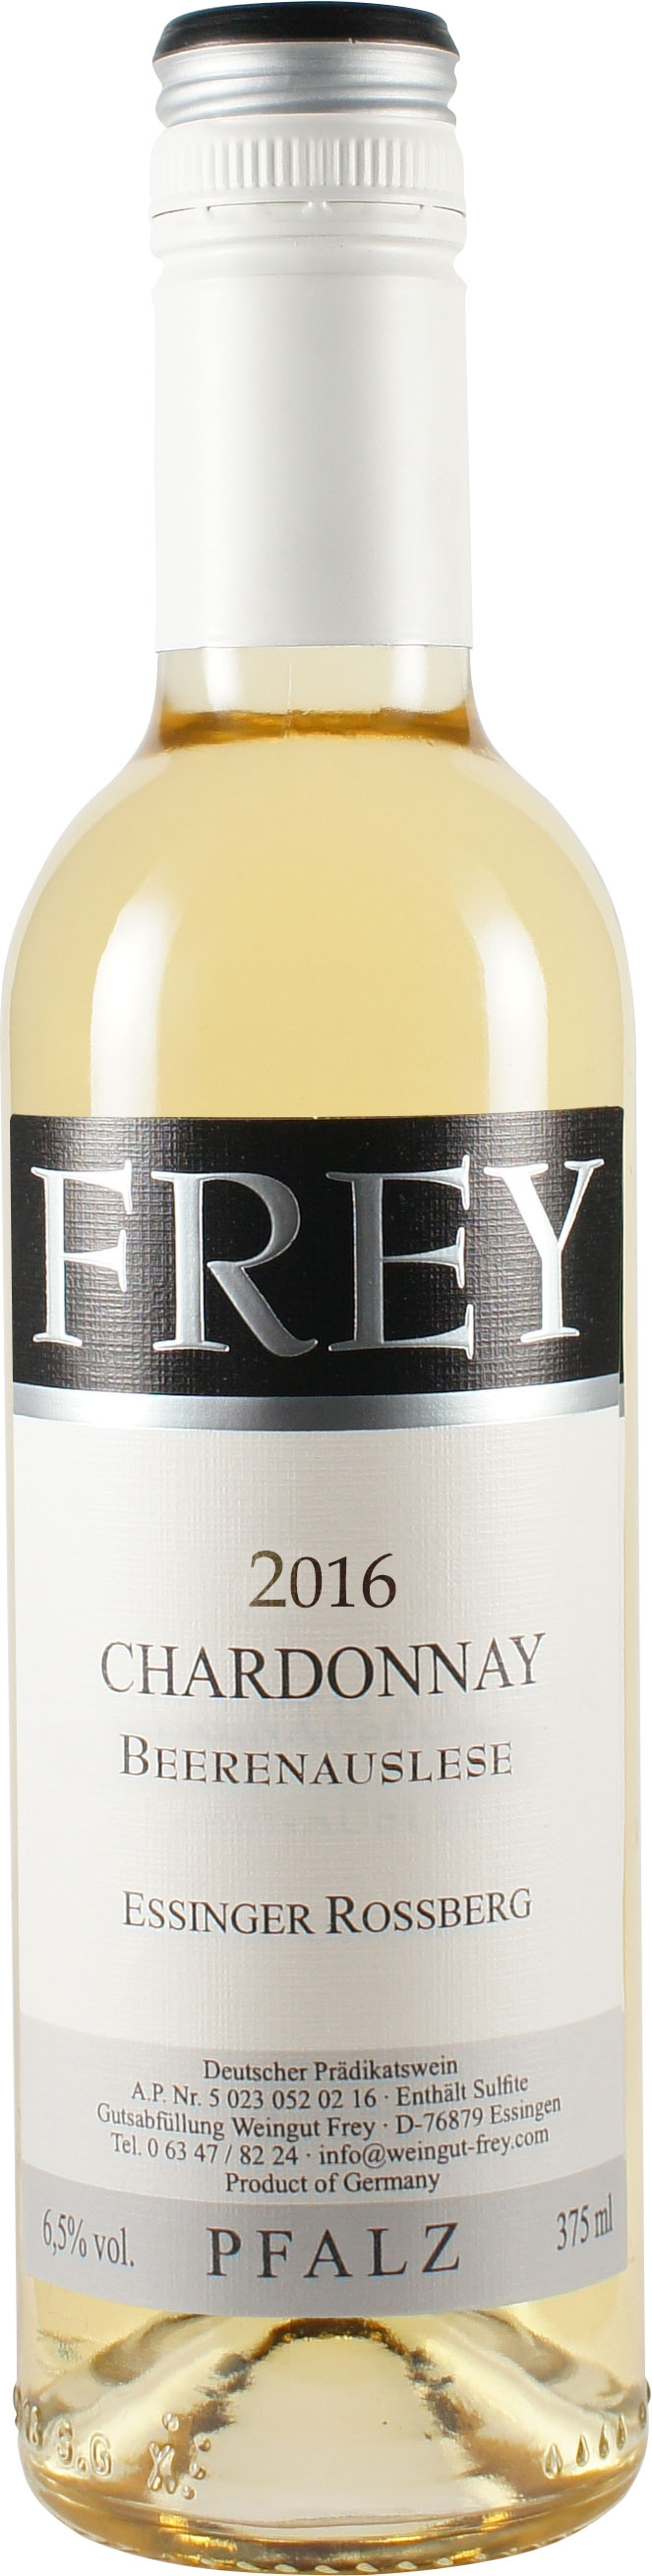 Frey 2016 Chardonnay Beerenauslese edelsüß 0,375 L